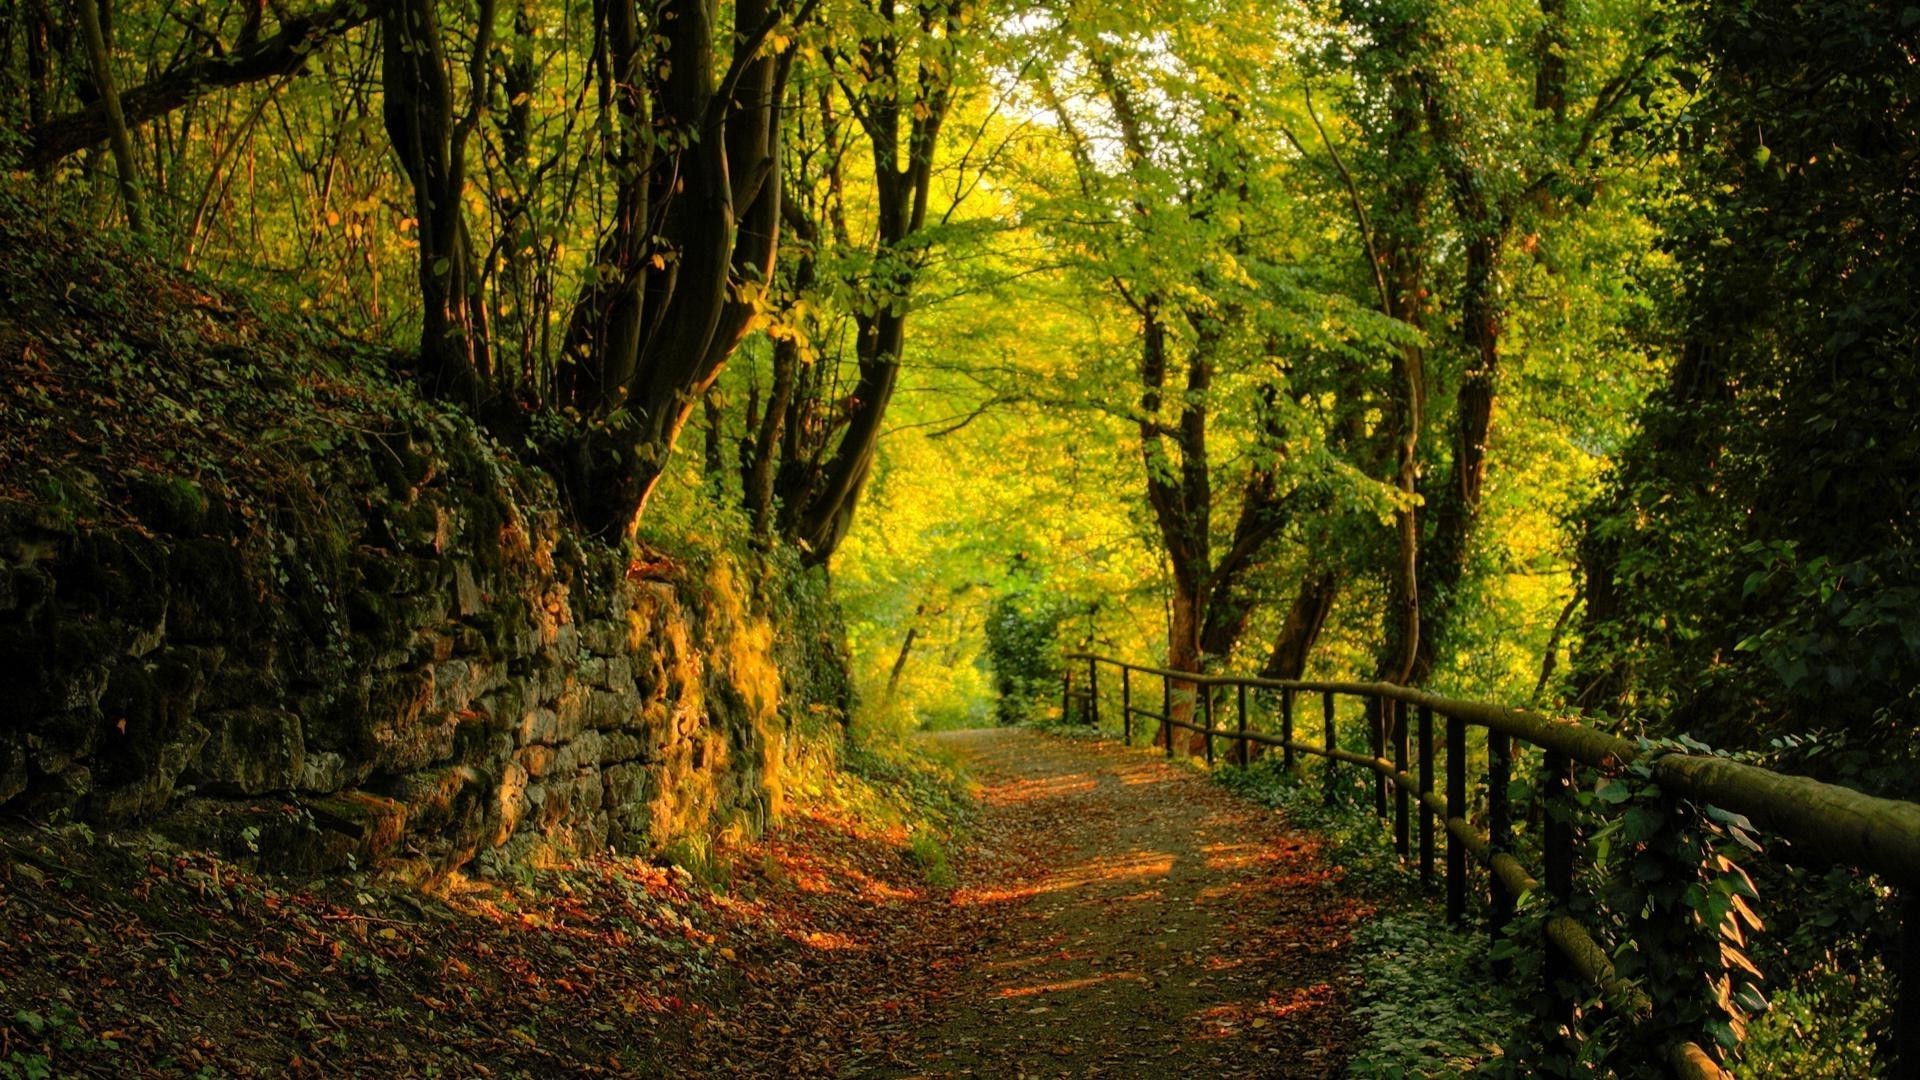 лес древесины осень лист дерево пейзаж природа парк живописный руководство пышные на открытом воздухе хорошую погоду тропинка среды след пейзажи рассвет походу сезон